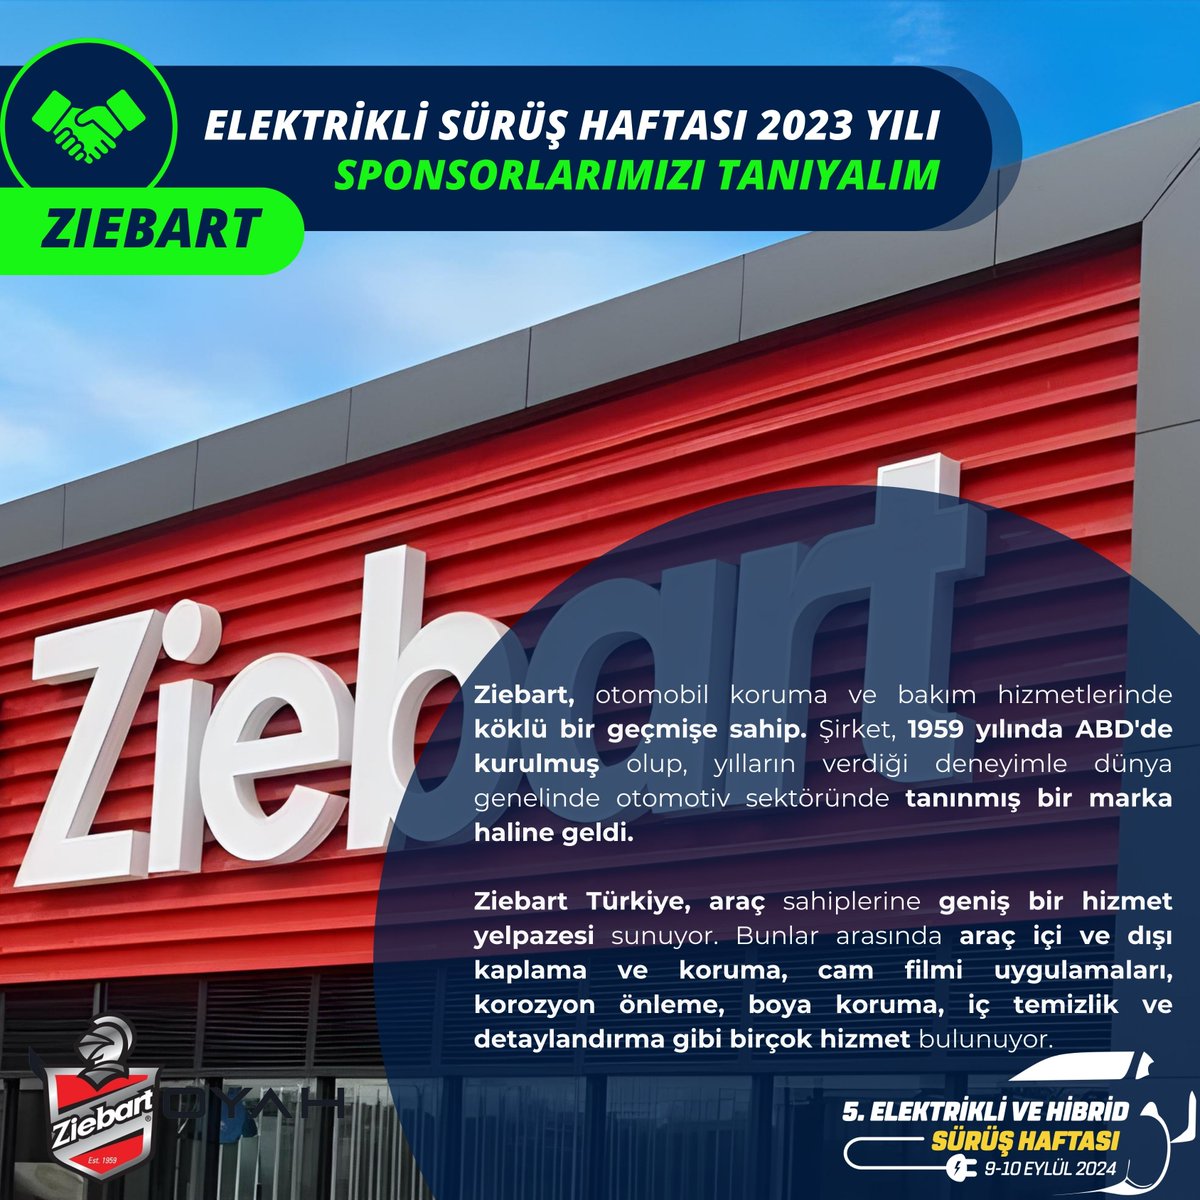 Ziebart Türkiye, araç sahiplerine geniş bir hizmet yelpazesi sunuyor. Bunlar arasında araç içi ve dışı kaplama ve koruma, cam filmi uygulamaları, korozyon önleme, boya koruma, iç temizlik ve detaylandırma gibi birçok hizmet bulunuyor. @ehcars #elektriklisürüşhaftası #ziebart